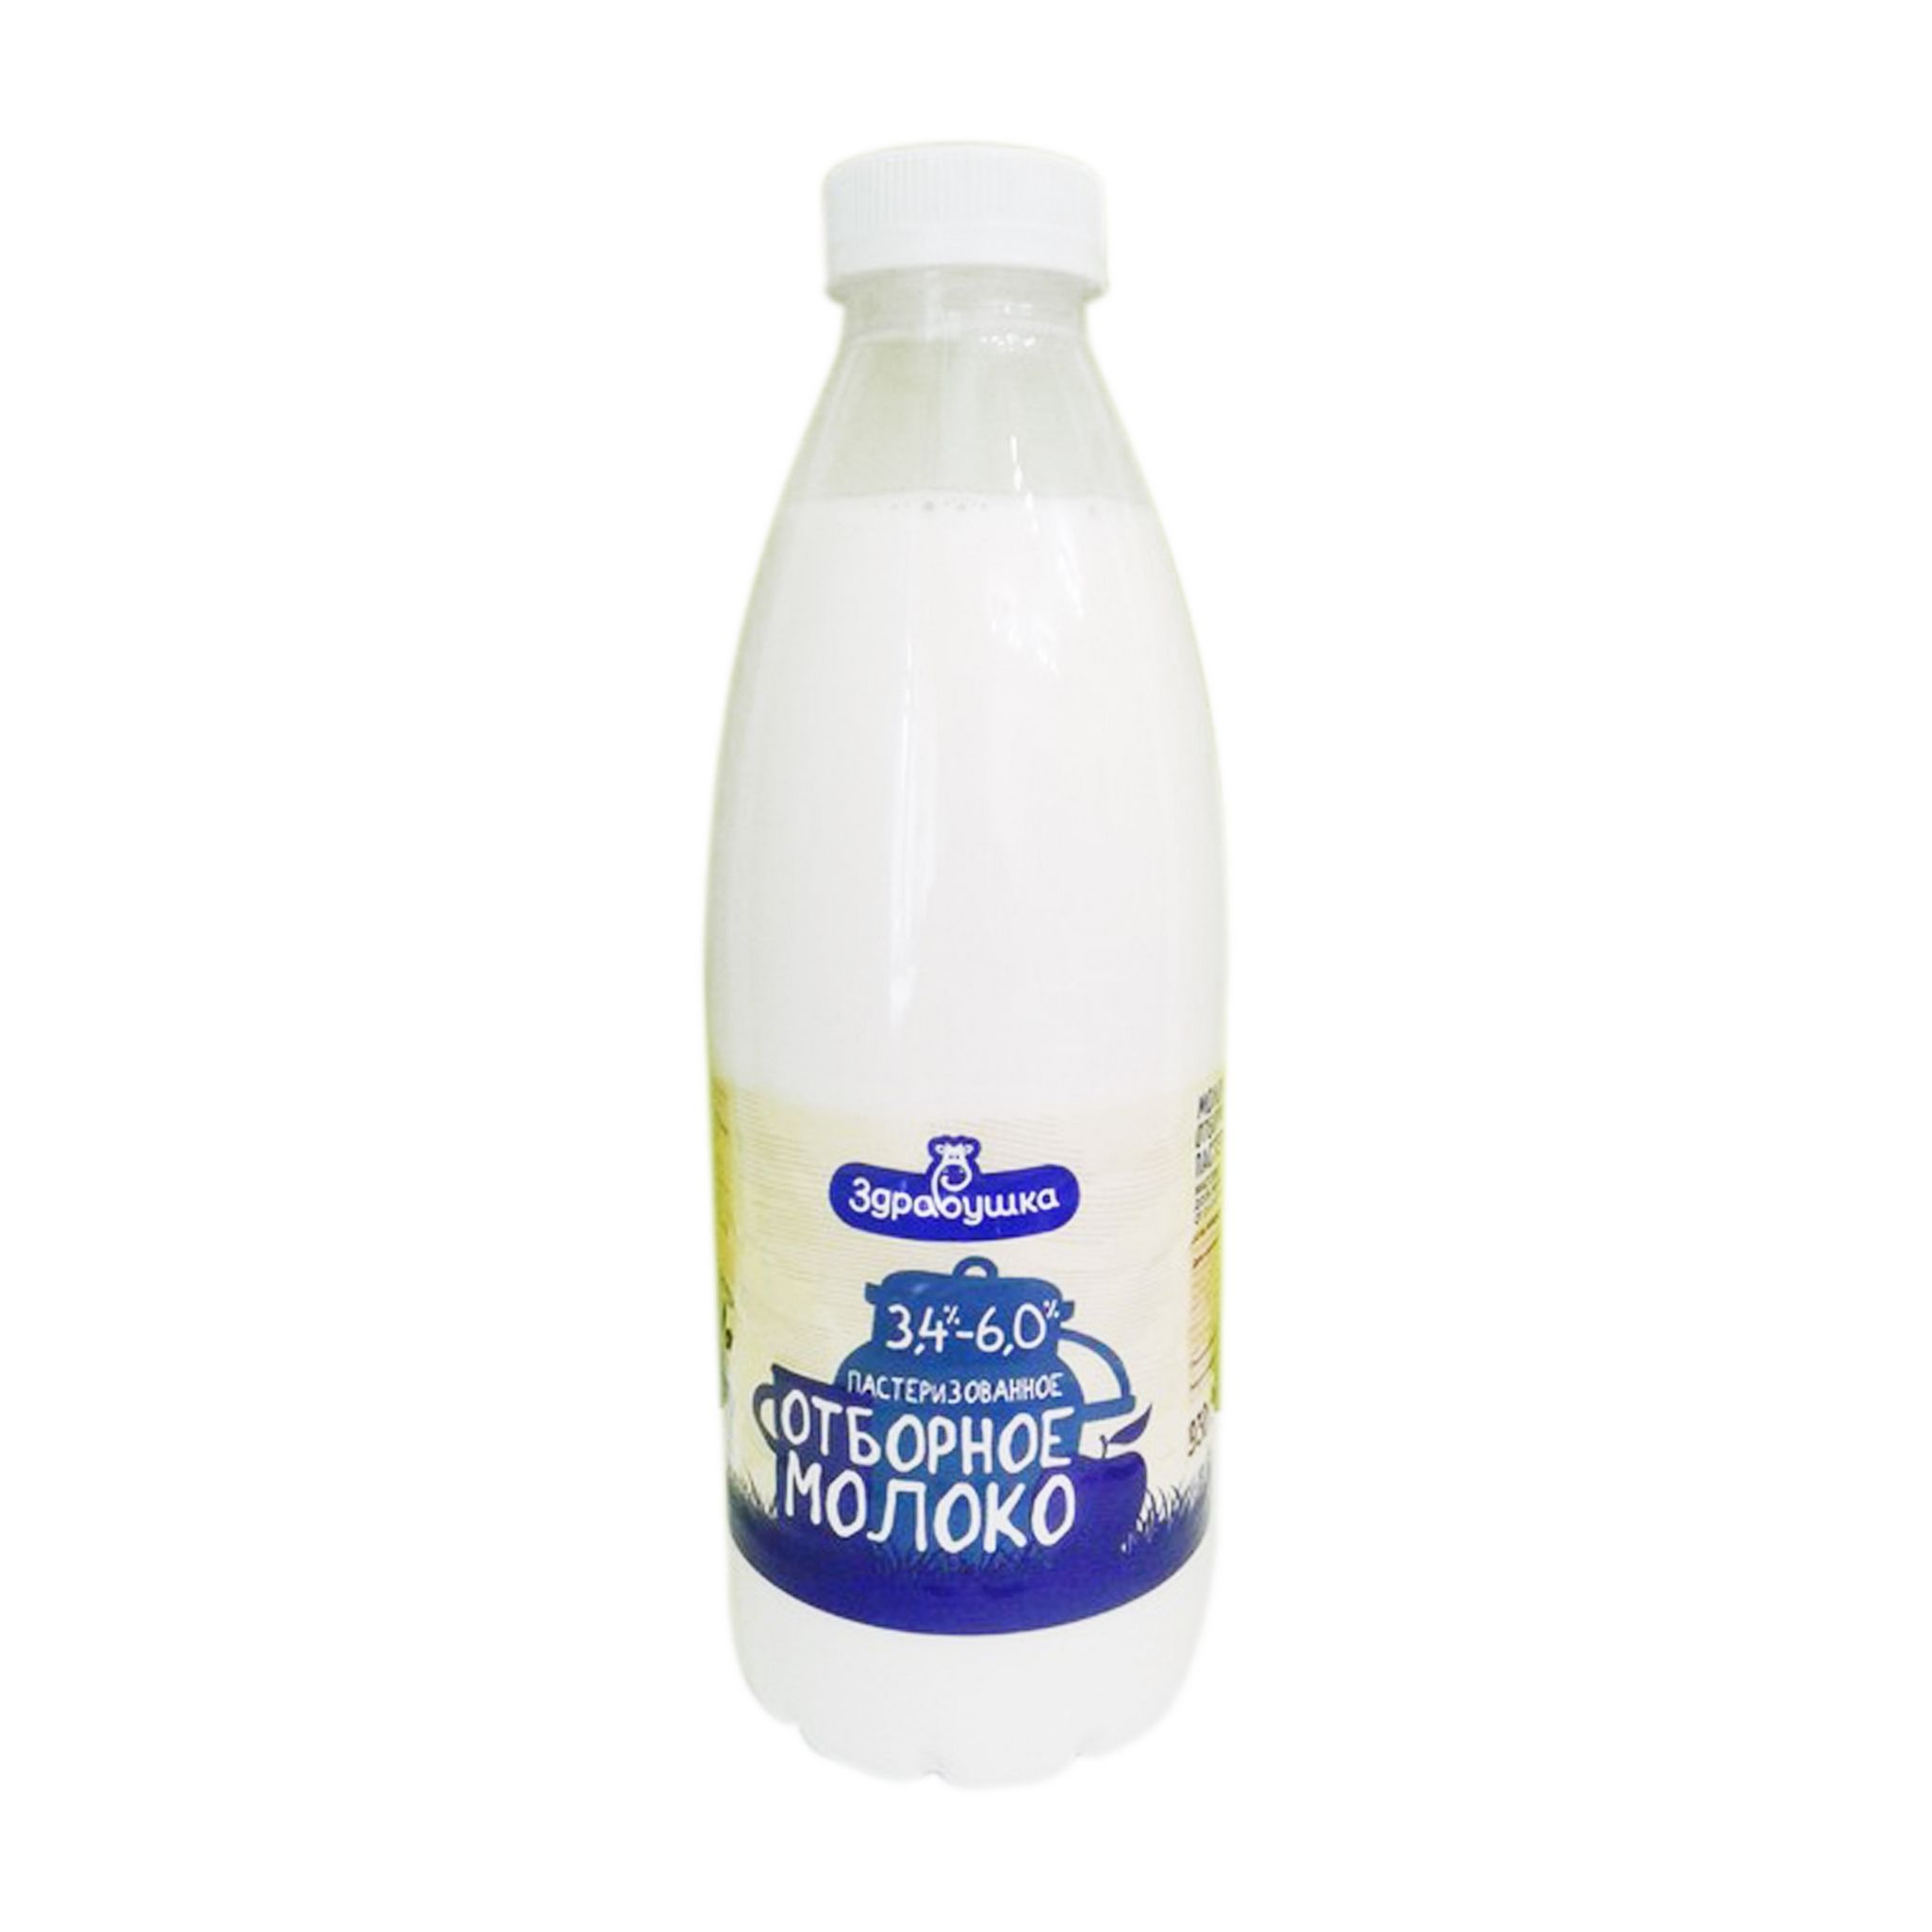 Здравушка молоко отборное пастерилизованное 3,4-6,0 % 930г